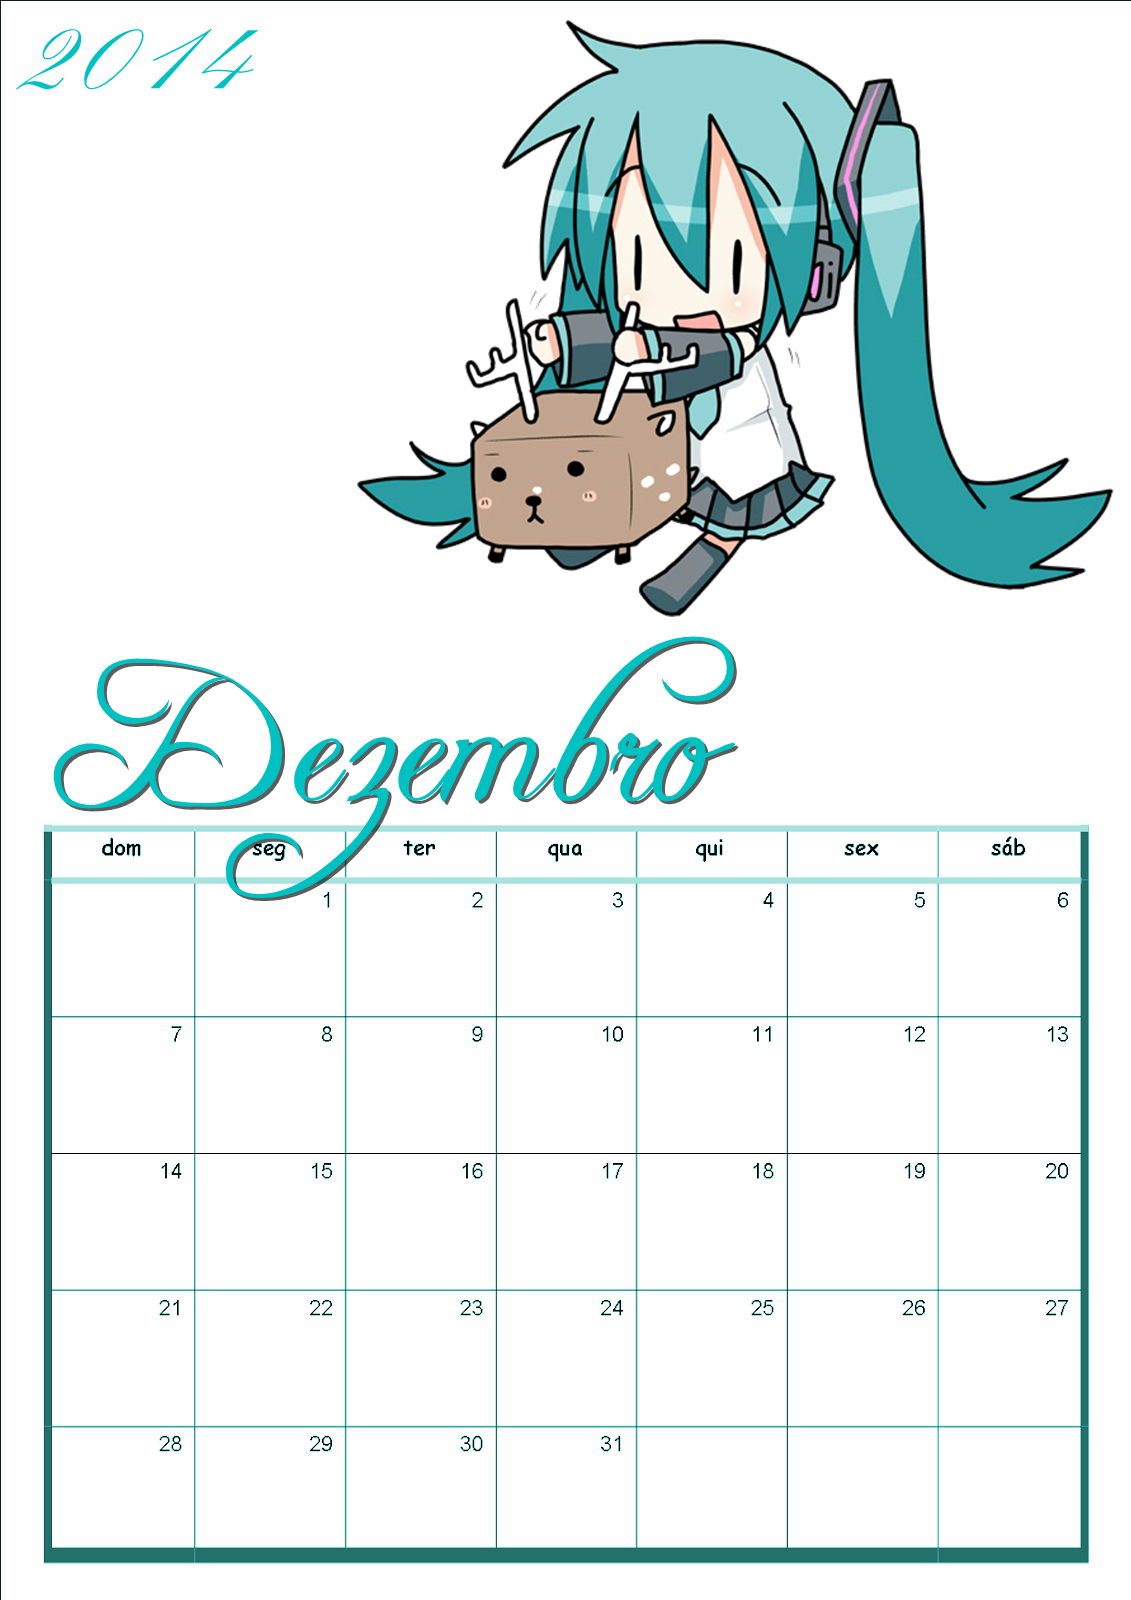 Calendário de anime!  Anime, Dezembro, Calendário